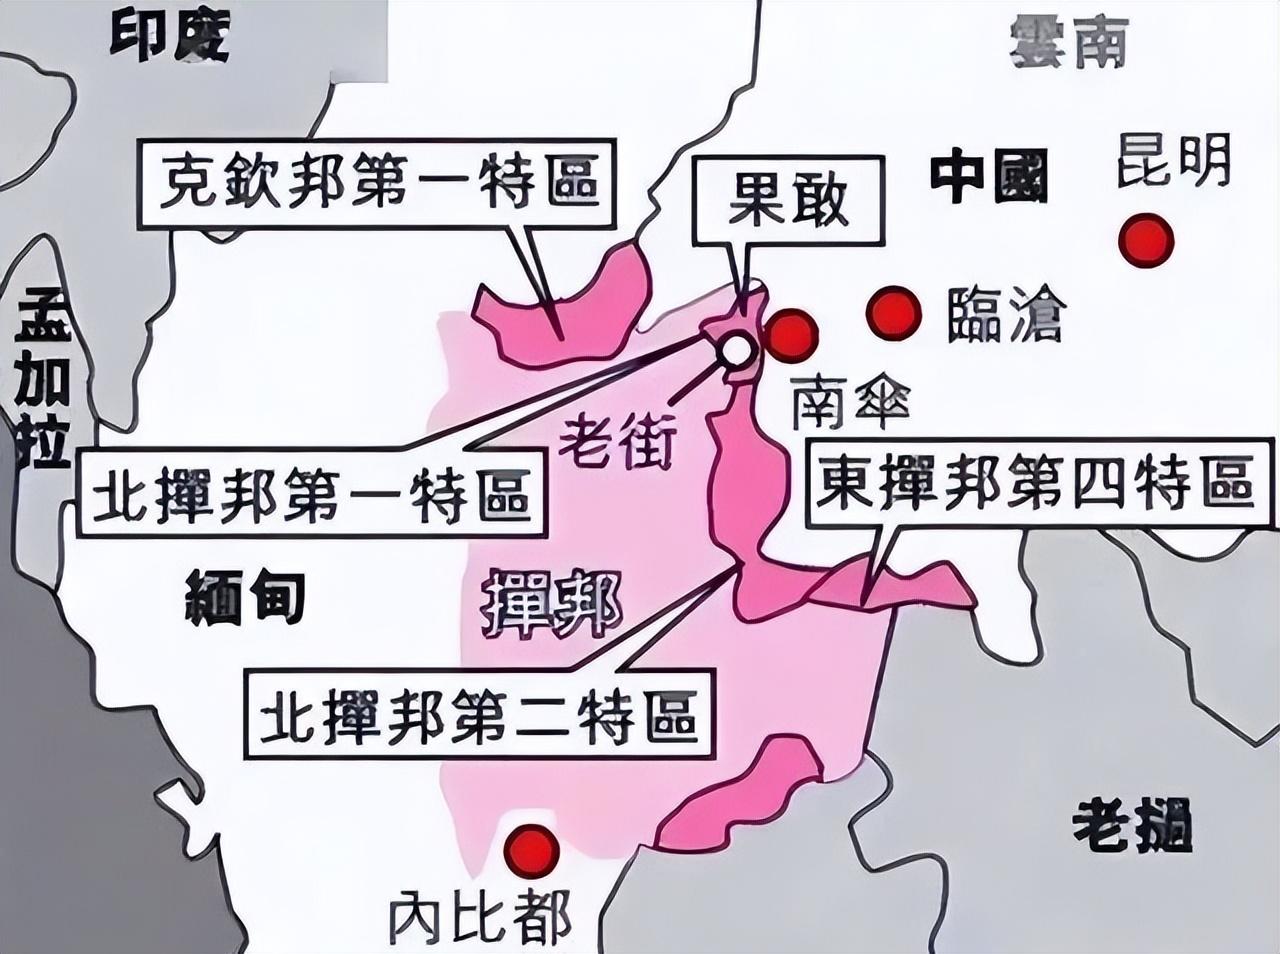 缅甸华人控制区地图图片